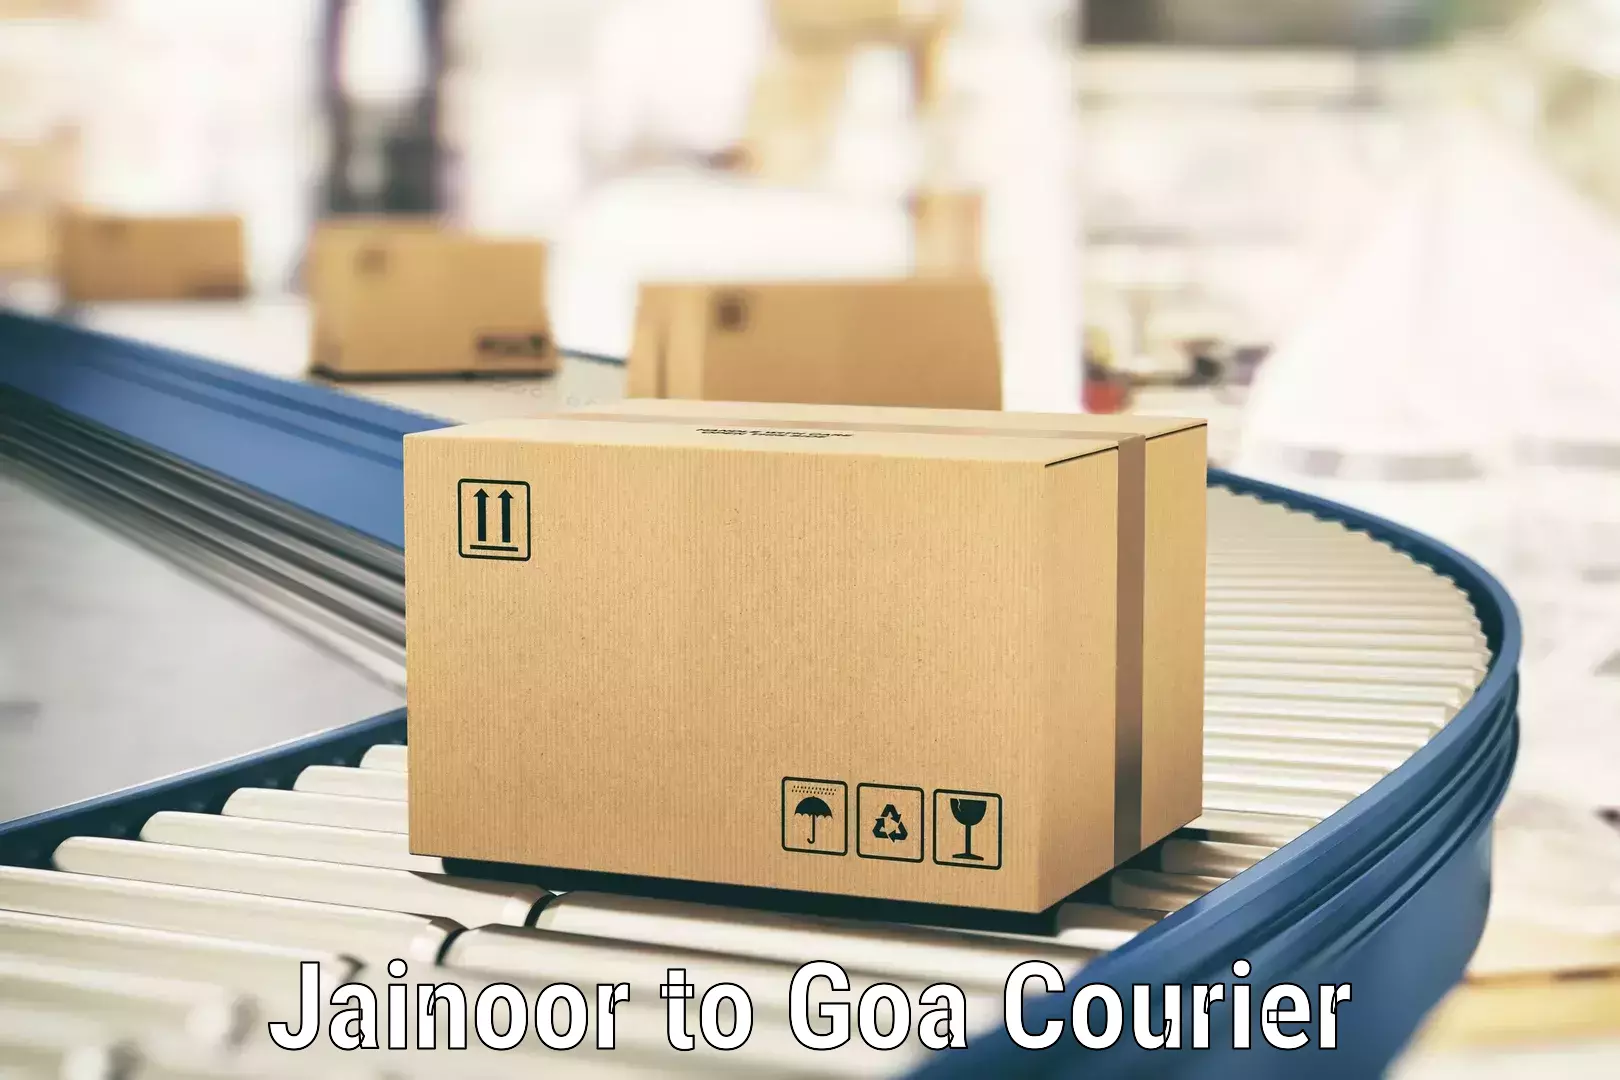 Efficient cargo services Jainoor to Panaji